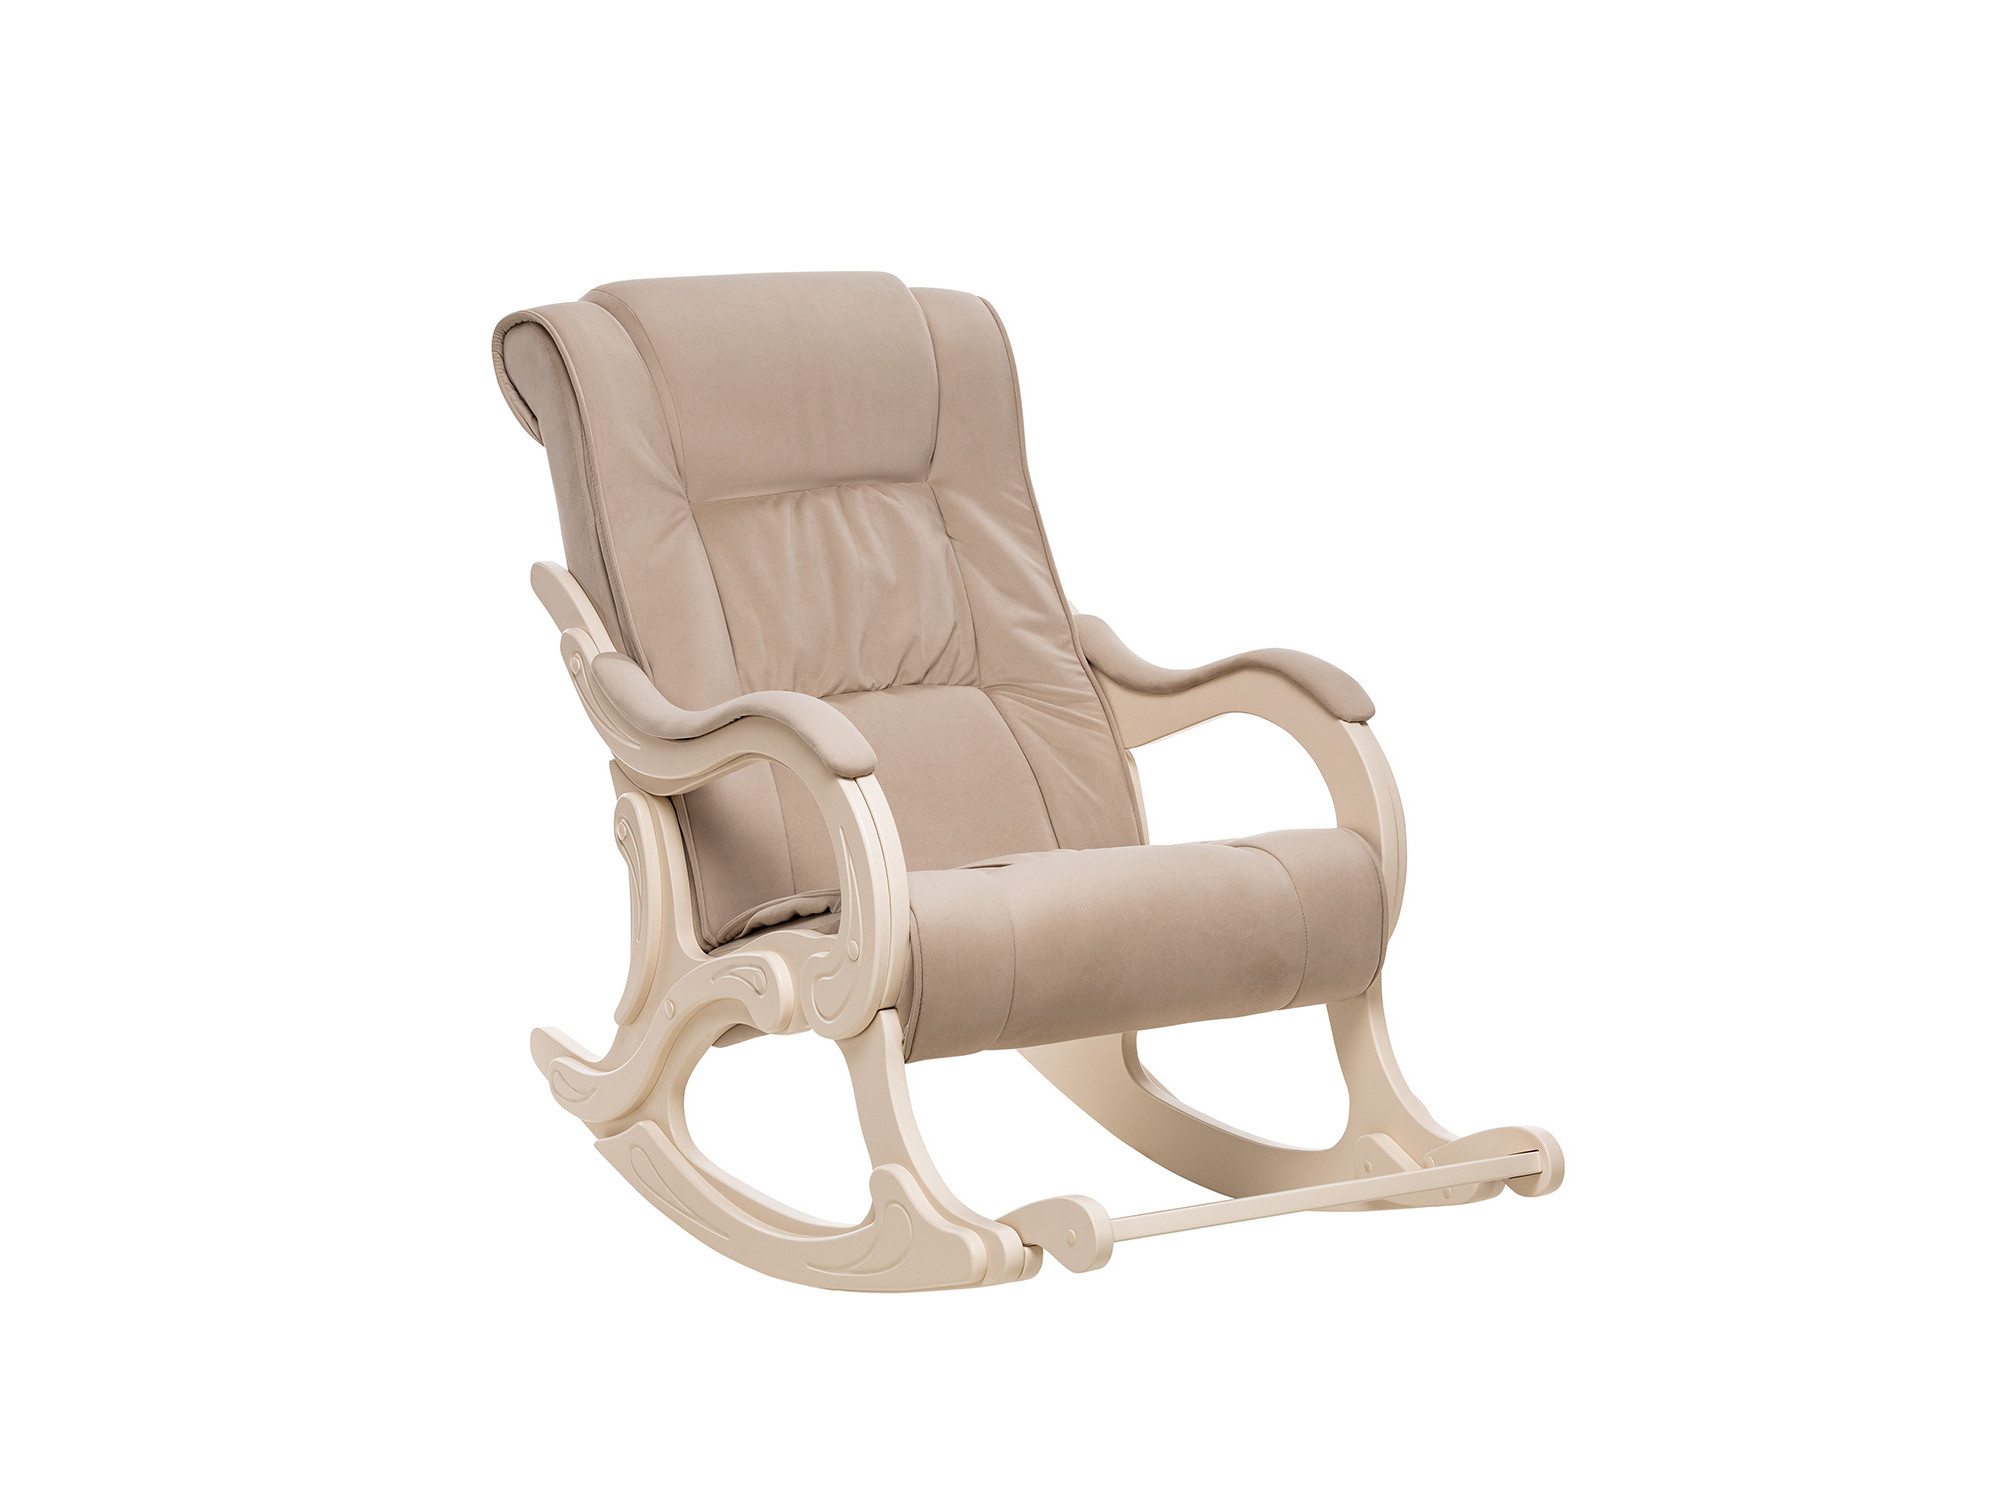 Кресло-качалка Модель 77 MebelVia V18 бежевый, Ткань Велюр, Фанера, шпон, лак кресло качалка модель 67 венге ткань v 43 mebelvia венге ткань велюр фанера